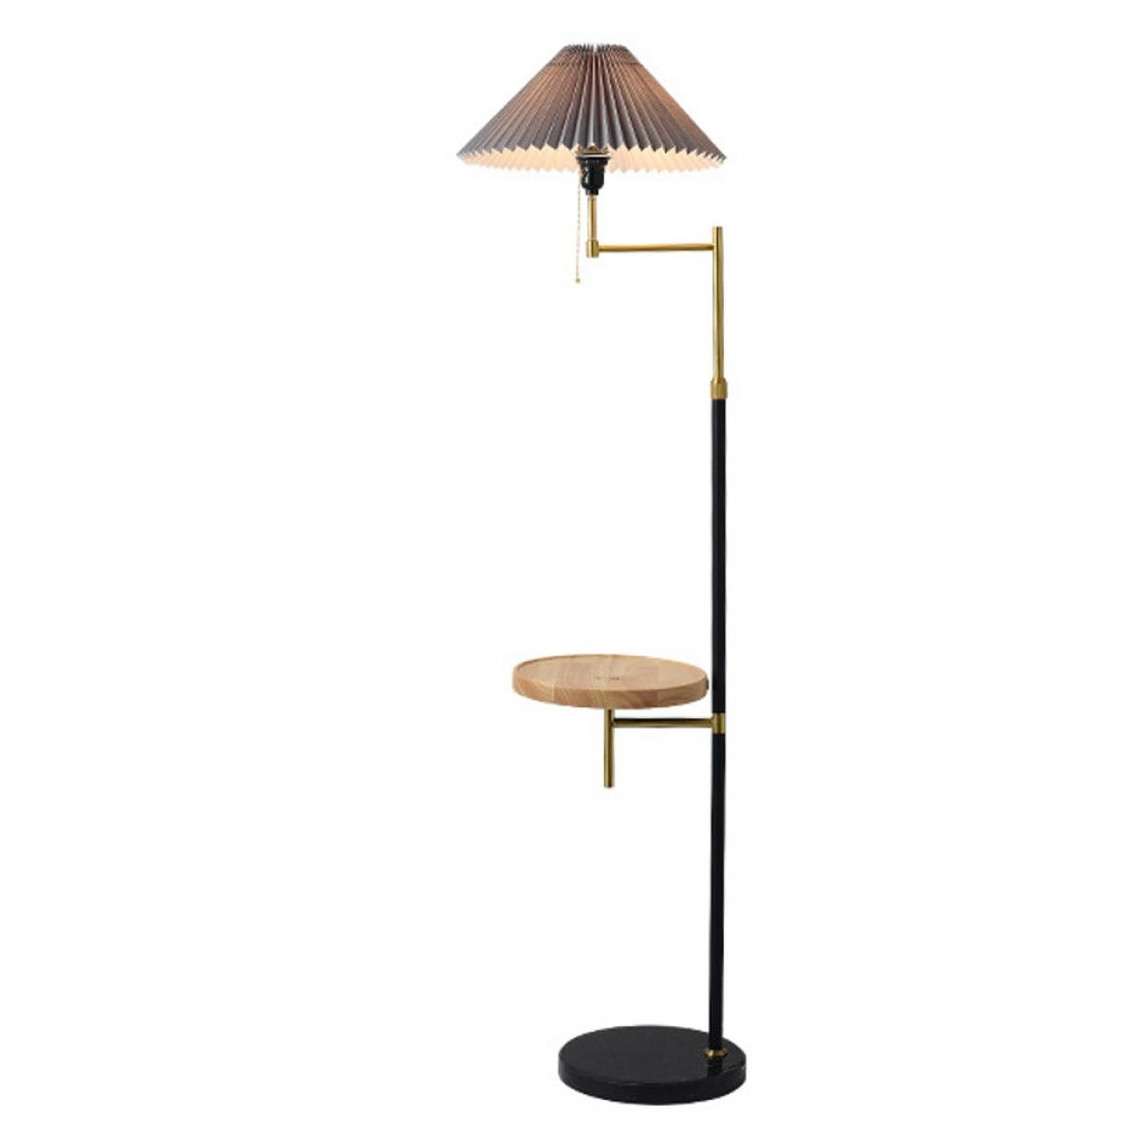 Lampes à poser Universal Lampadaire rechargeable sans fil 12W Table basse Salon Chambre Lampe de chevet Lampe de table verticale (lampe chaude)